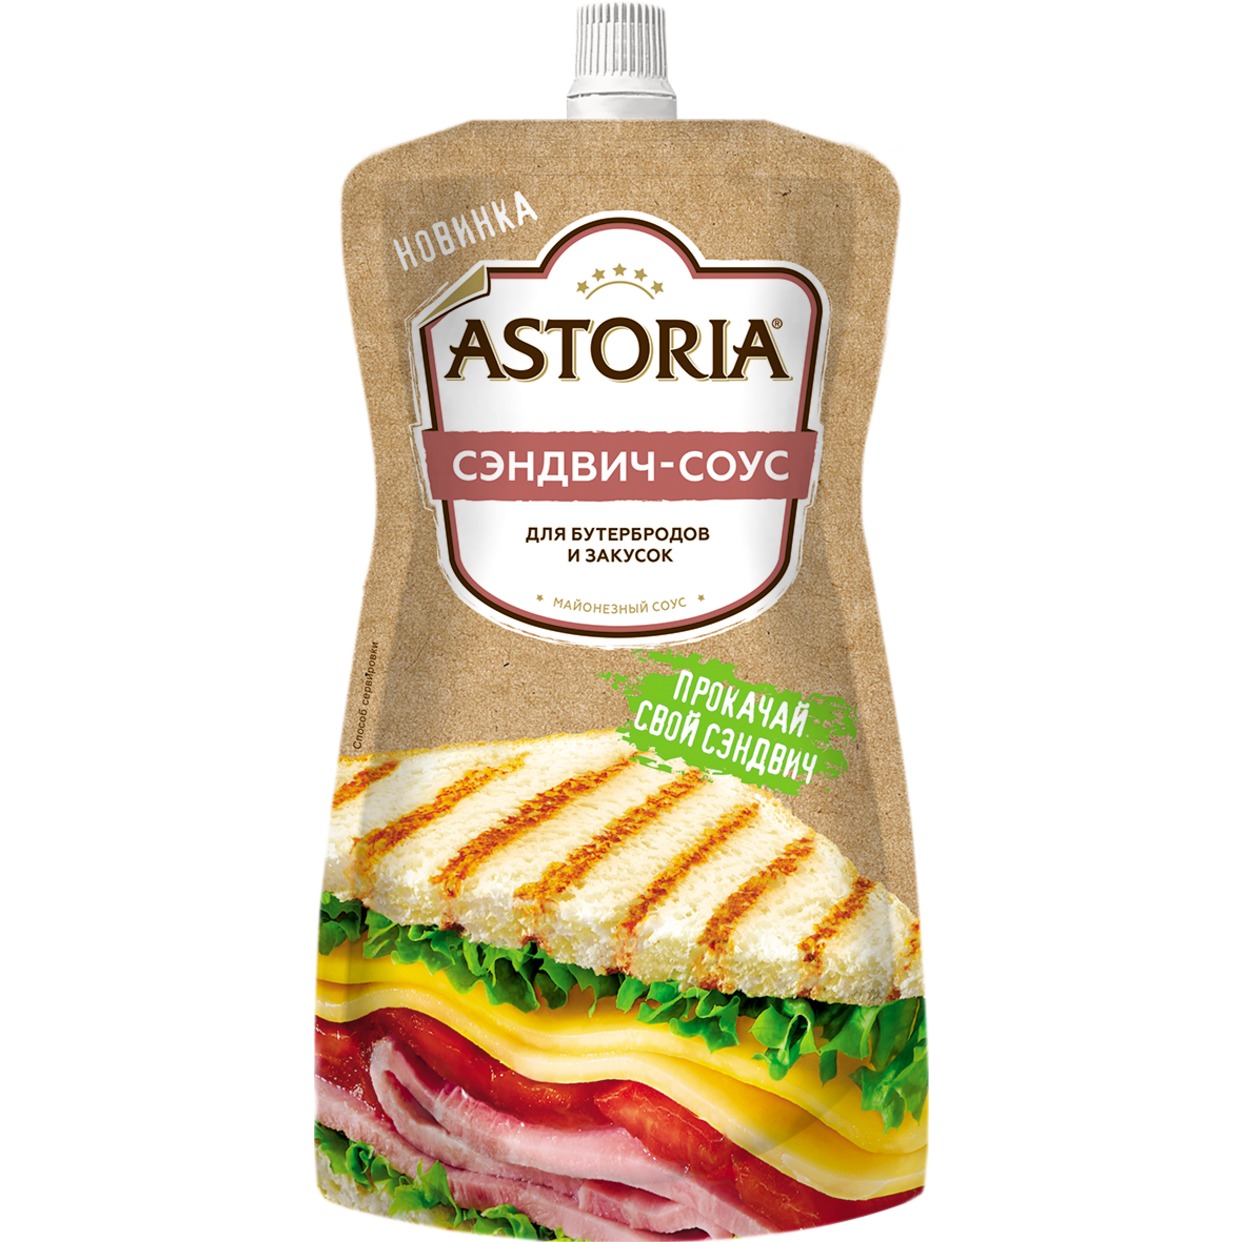 Соус Astoria, сэндвич-соус, 200 г по акции в Пятерочке